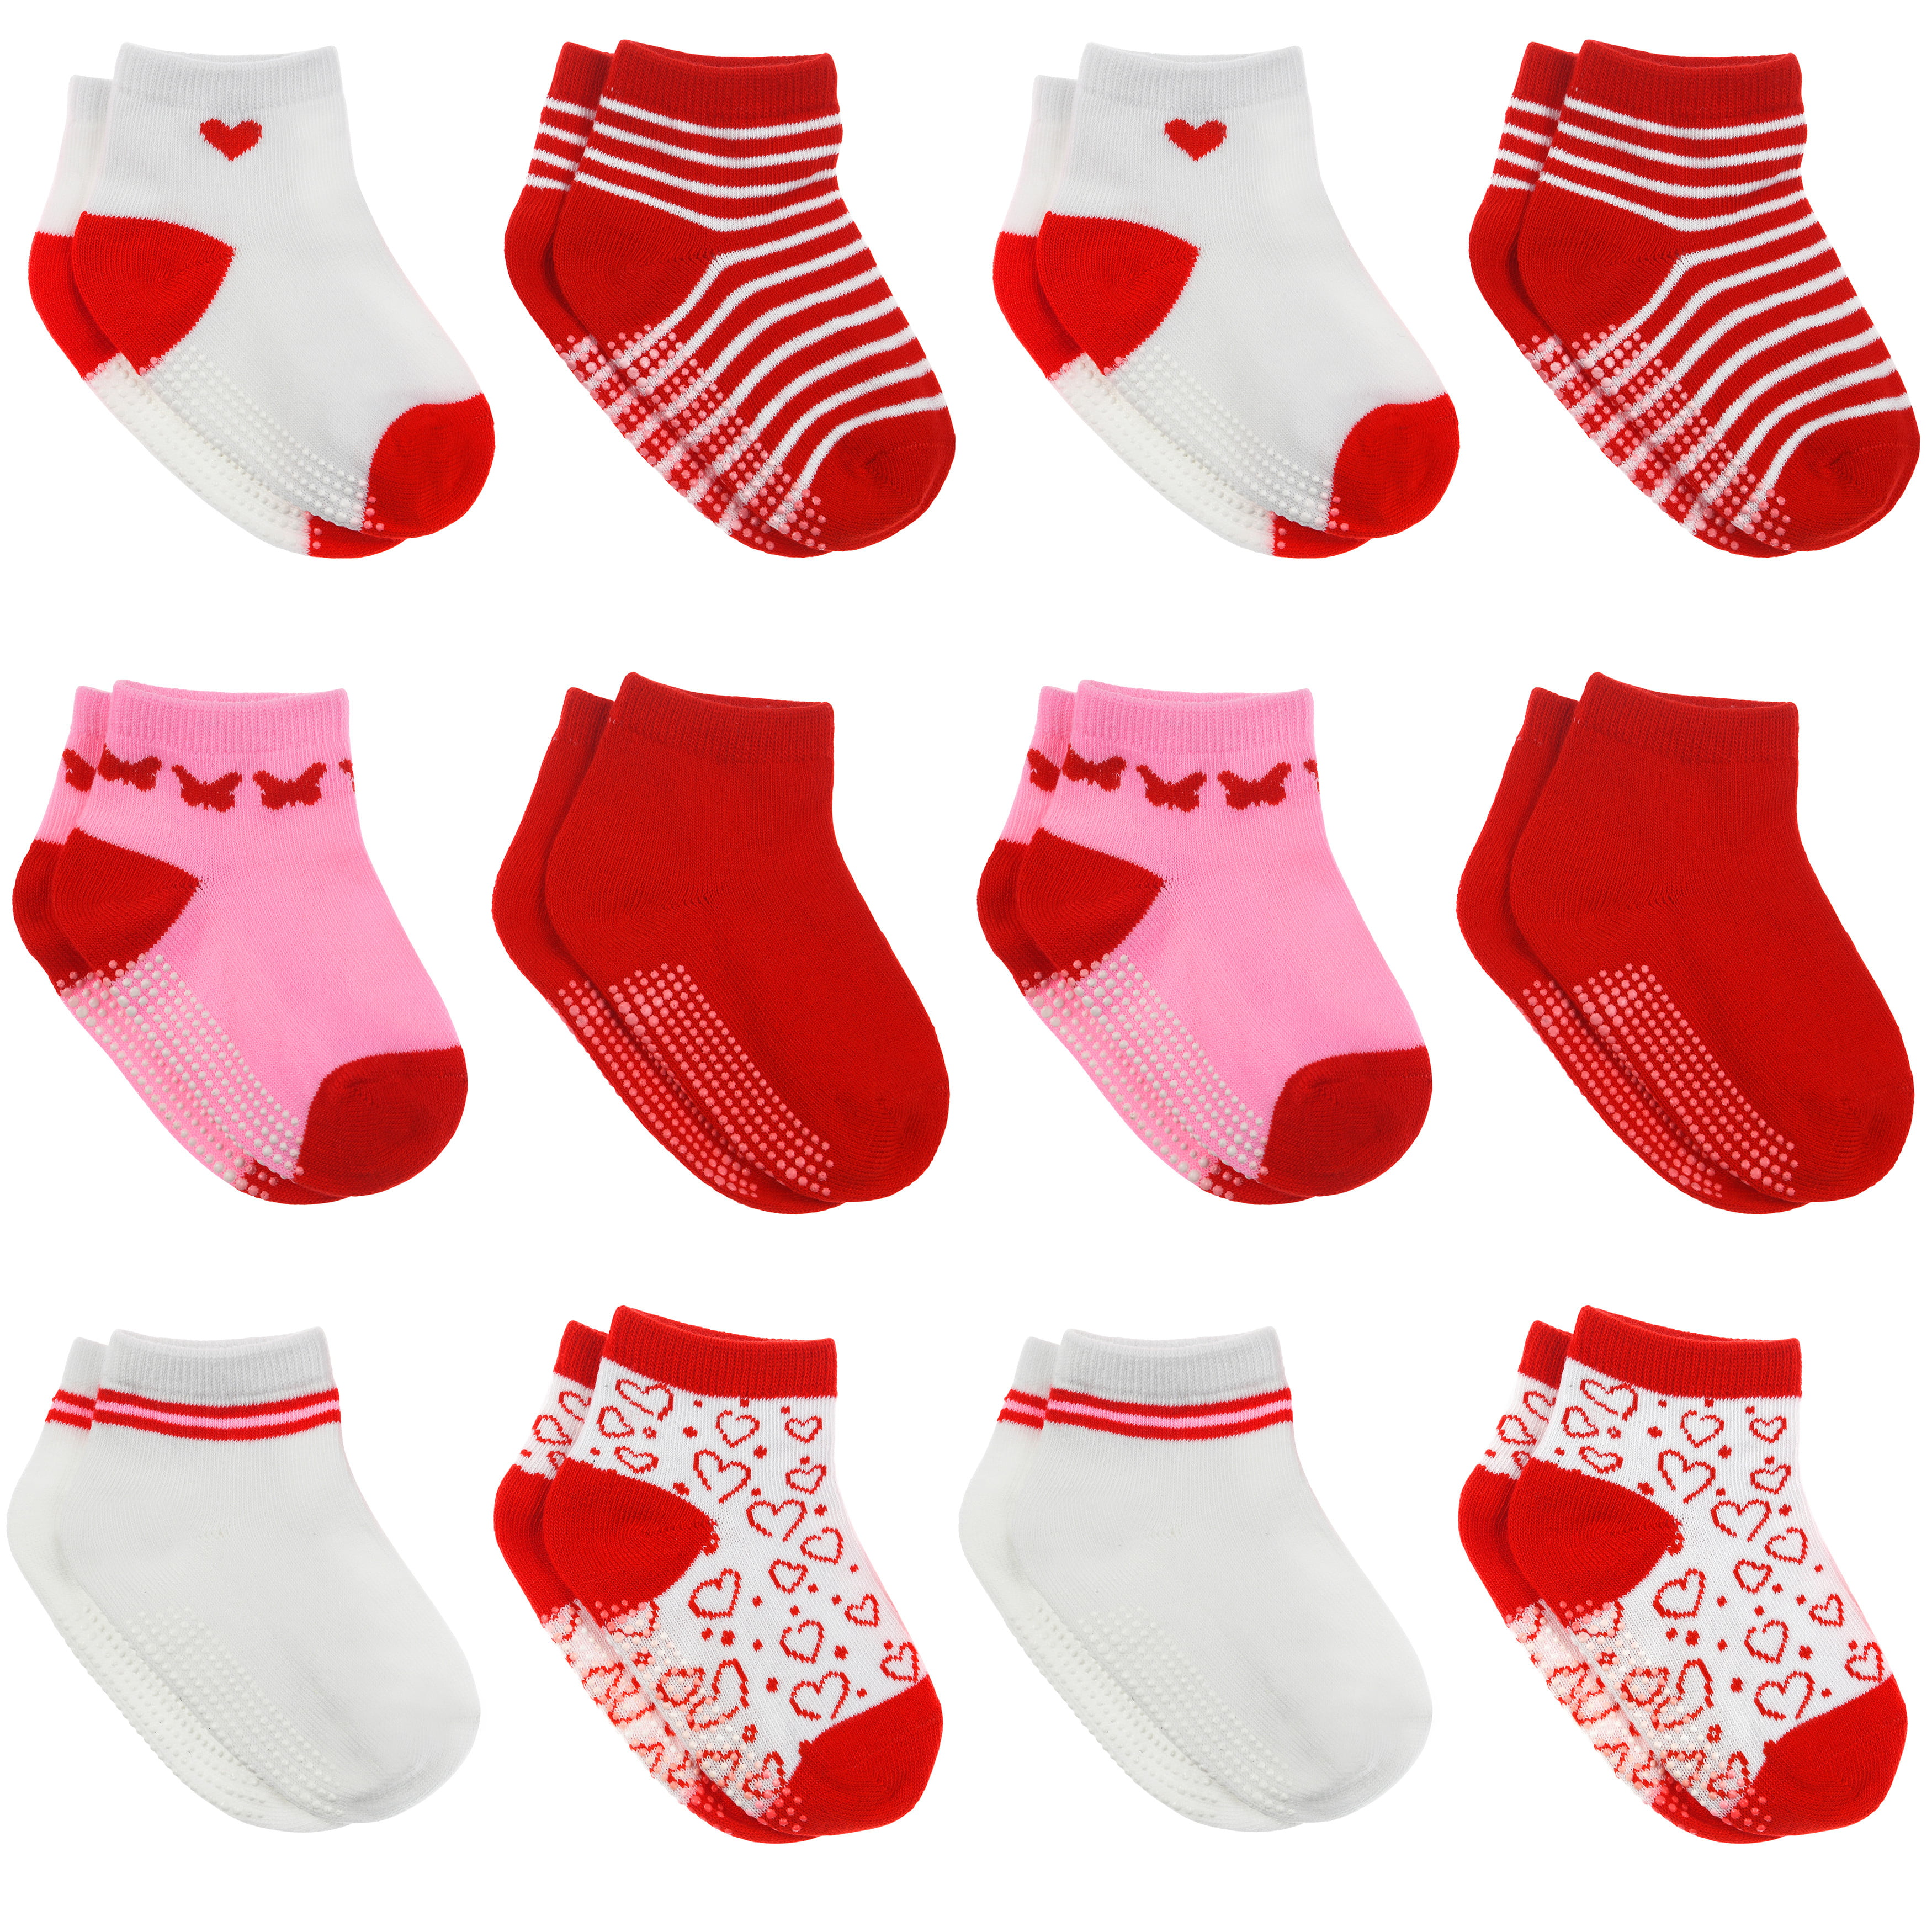 Unisex Baby Winter Crew Socks Antiskid Cotton Walker Sock for Toddler and Infant